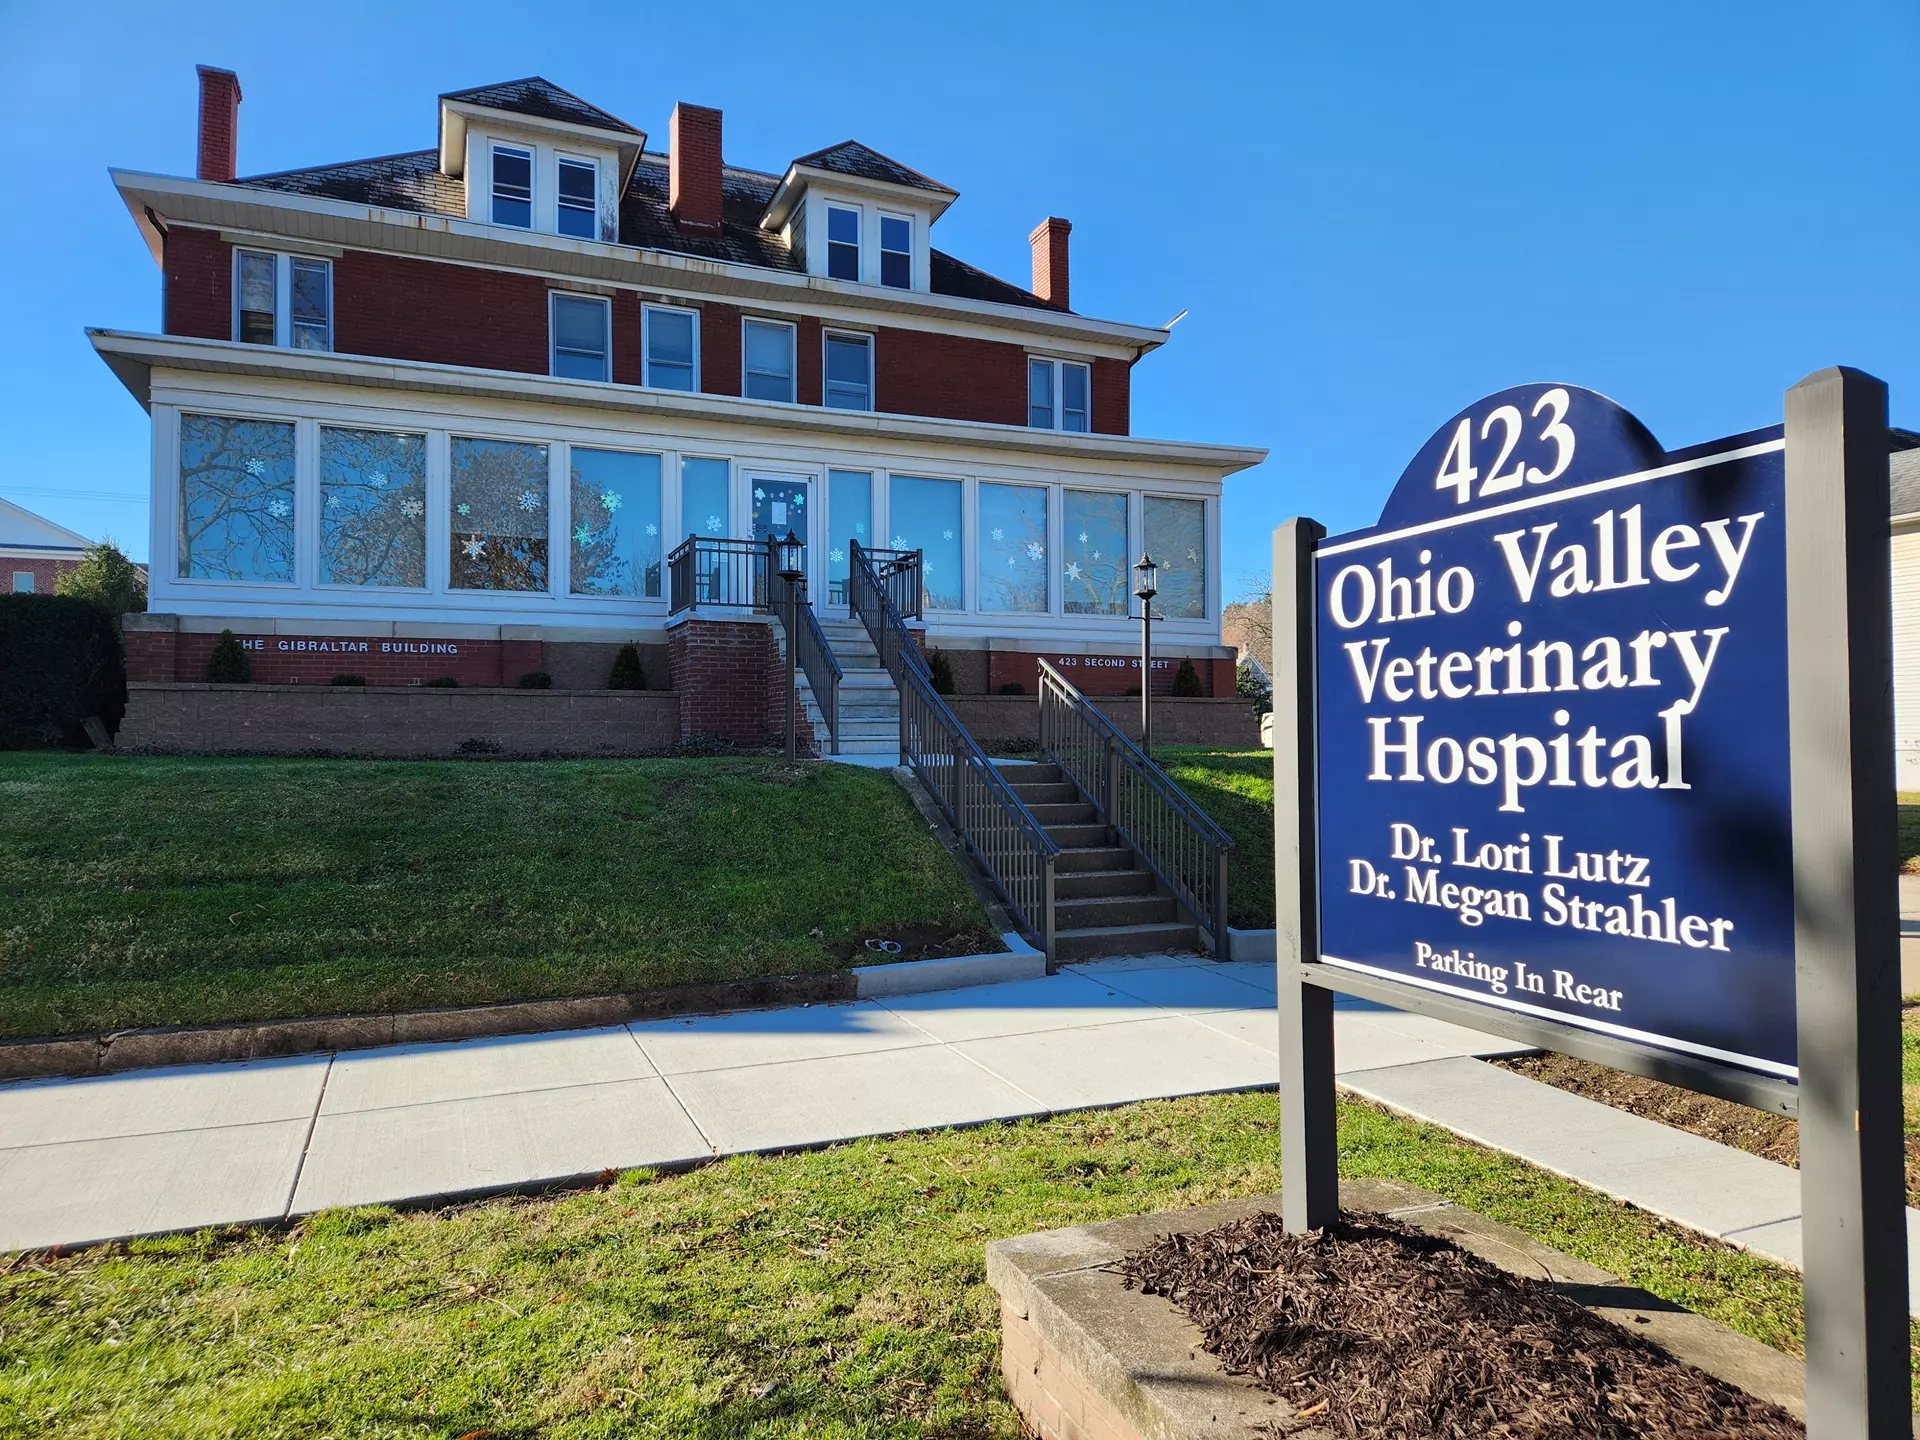 Ohio Valley Veterinary Hospital